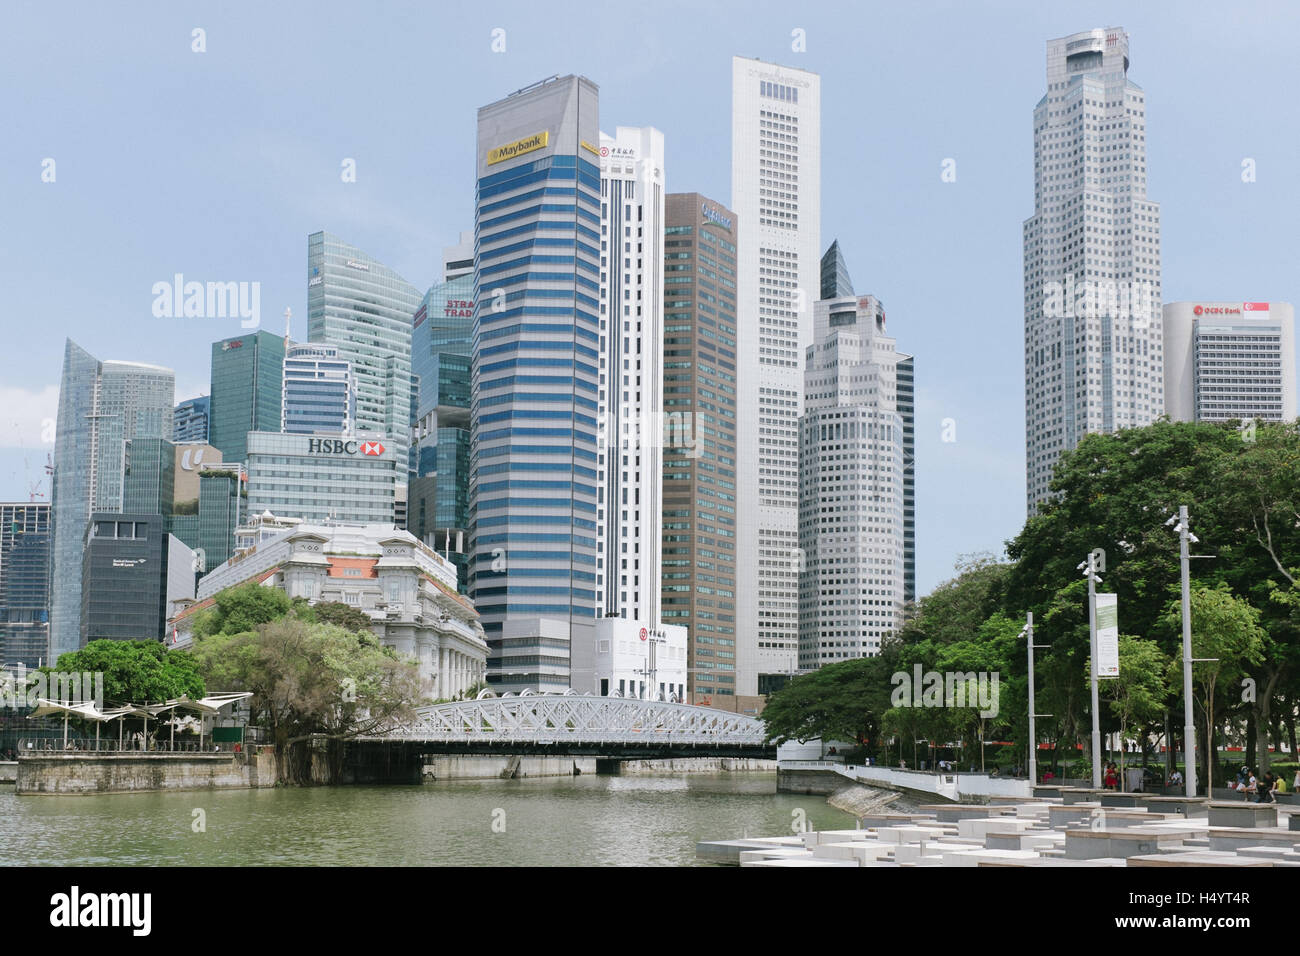 Porto di Singapore skyline del quartiere centrale degli affari di edifici. Foto Stock